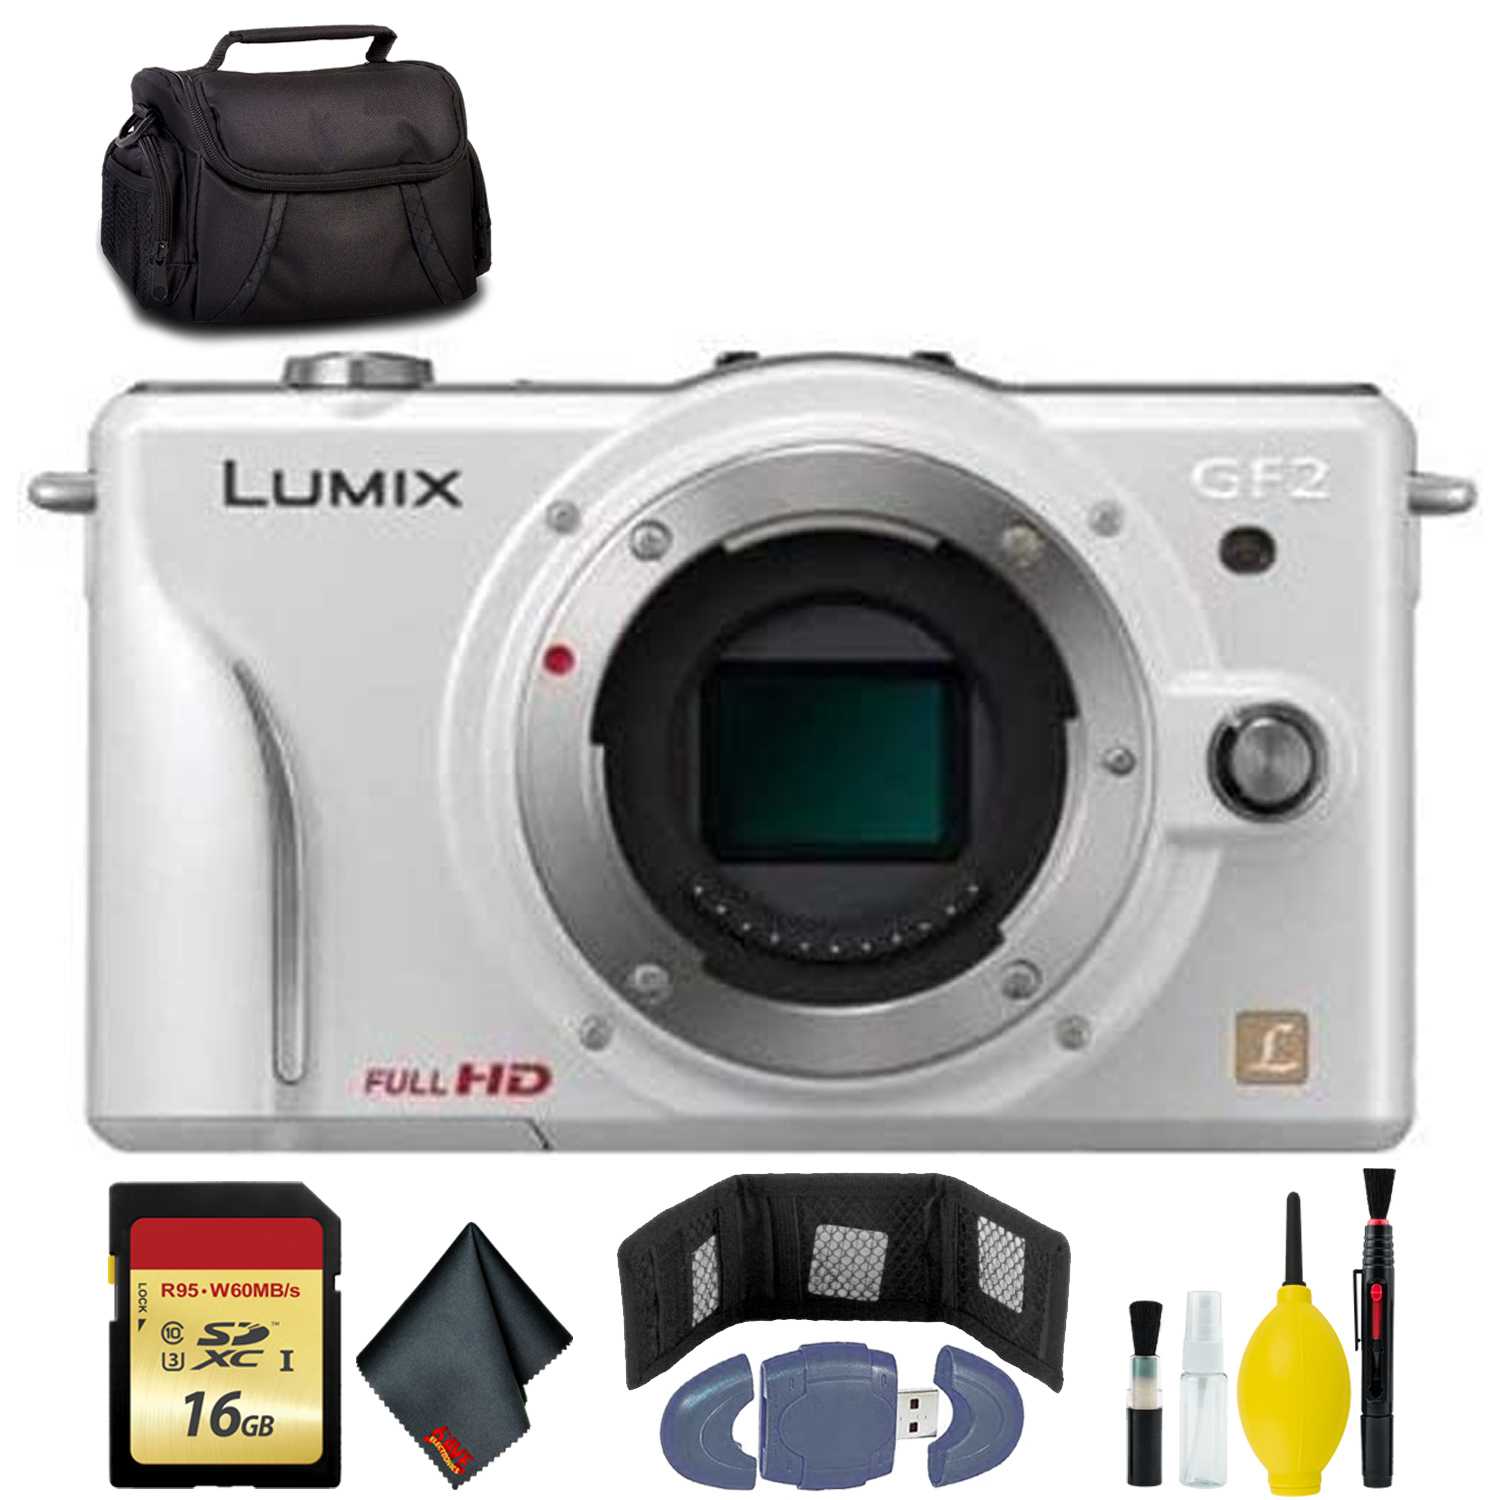 Фотоаппарат panasonic (панасоник) lumix dmc-gf2 kit в спб: купить недорого.